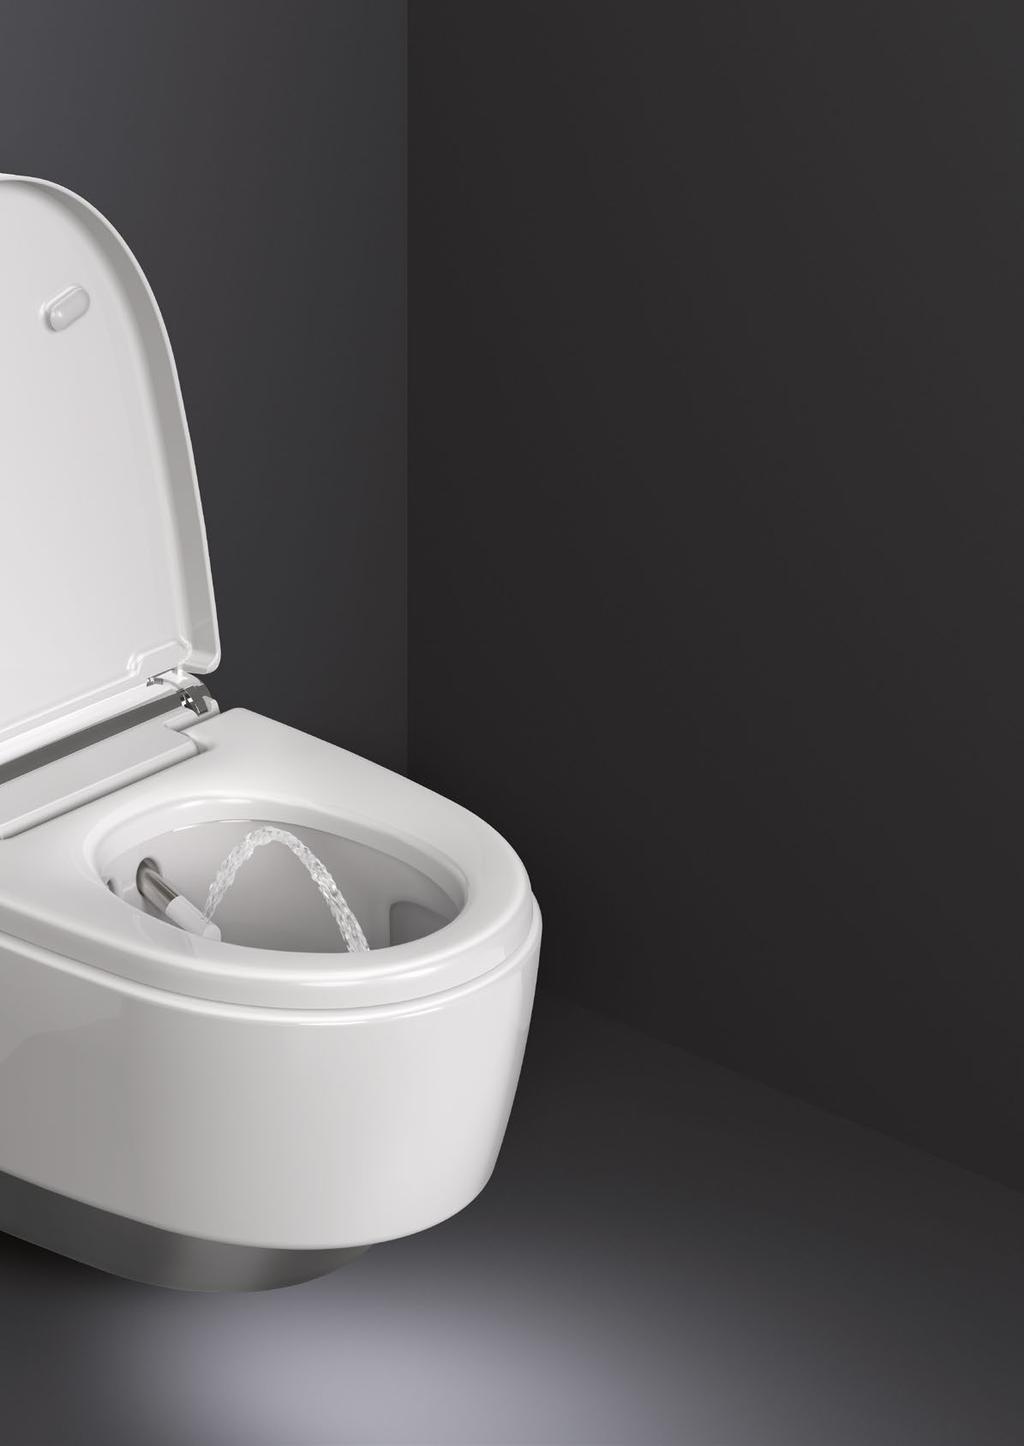 DO VEĽKEJ MIERY BEZDOTYKOVÉ Kryt WC sa vďaka senzoru priblíženia otvára a zatvára automaticky.